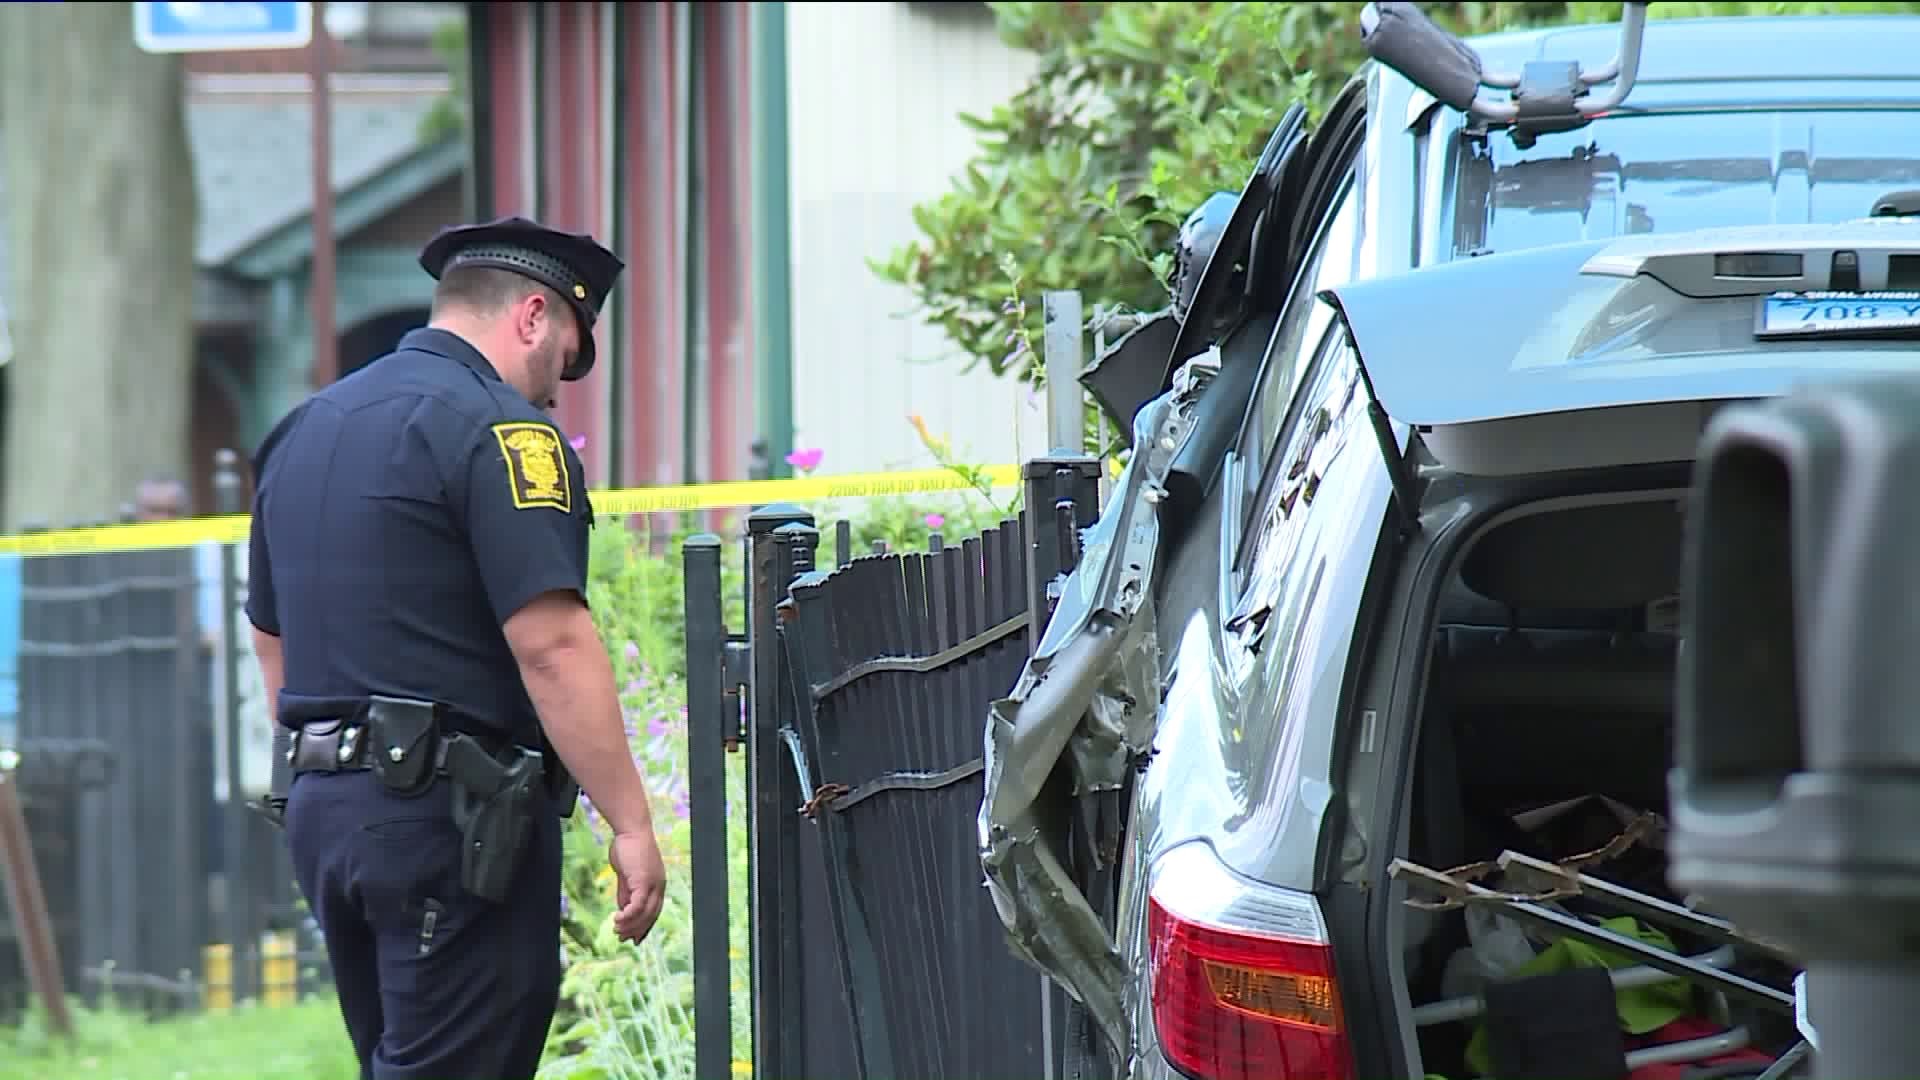 Pedestrians severely struck in Hartford